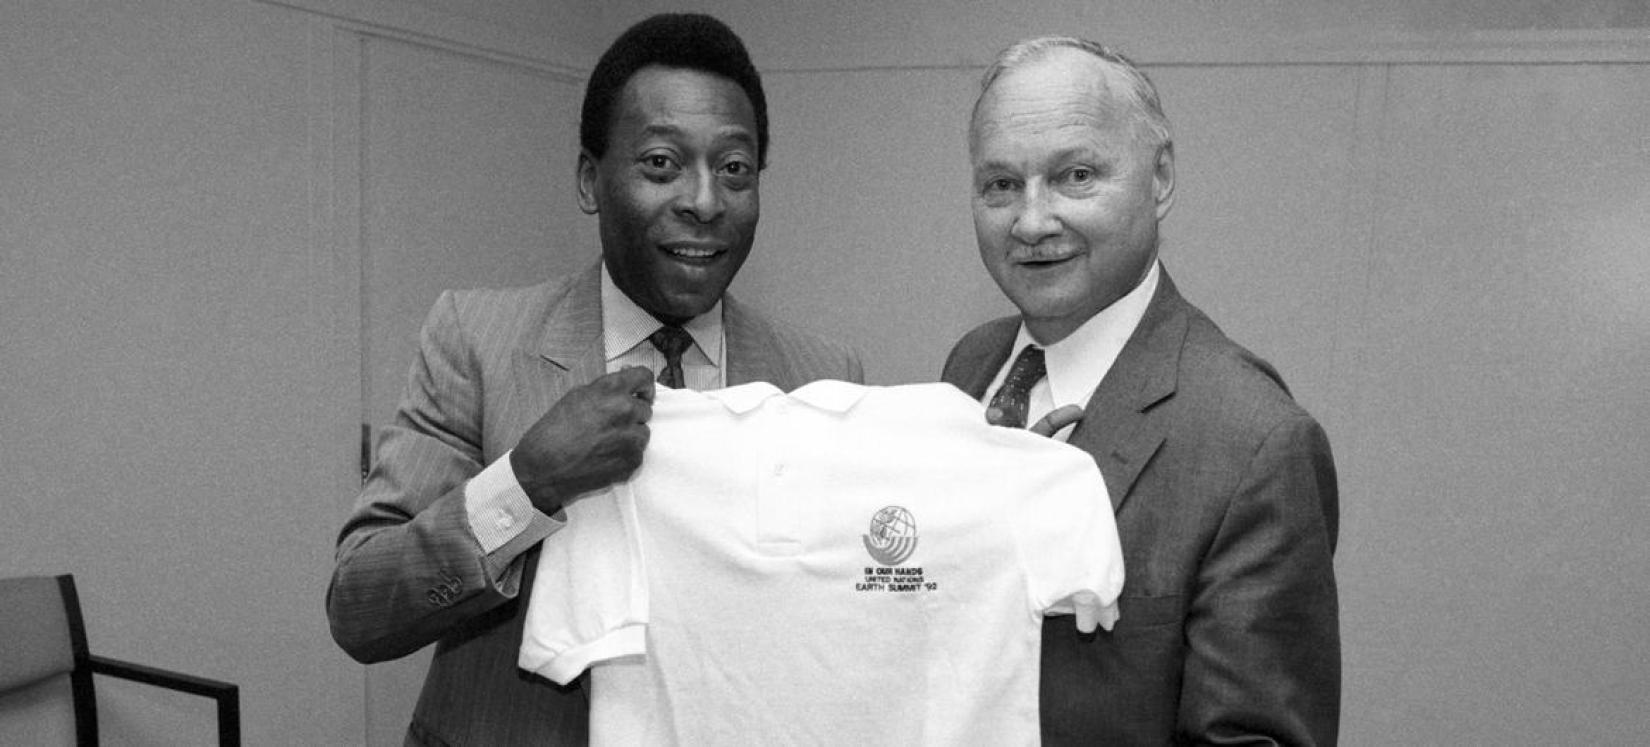 Pelé é apresentado como Embaixador da Boa Vontade das Nações Unidas por Maurice Strong, em coletiva de imprensa em 1992.